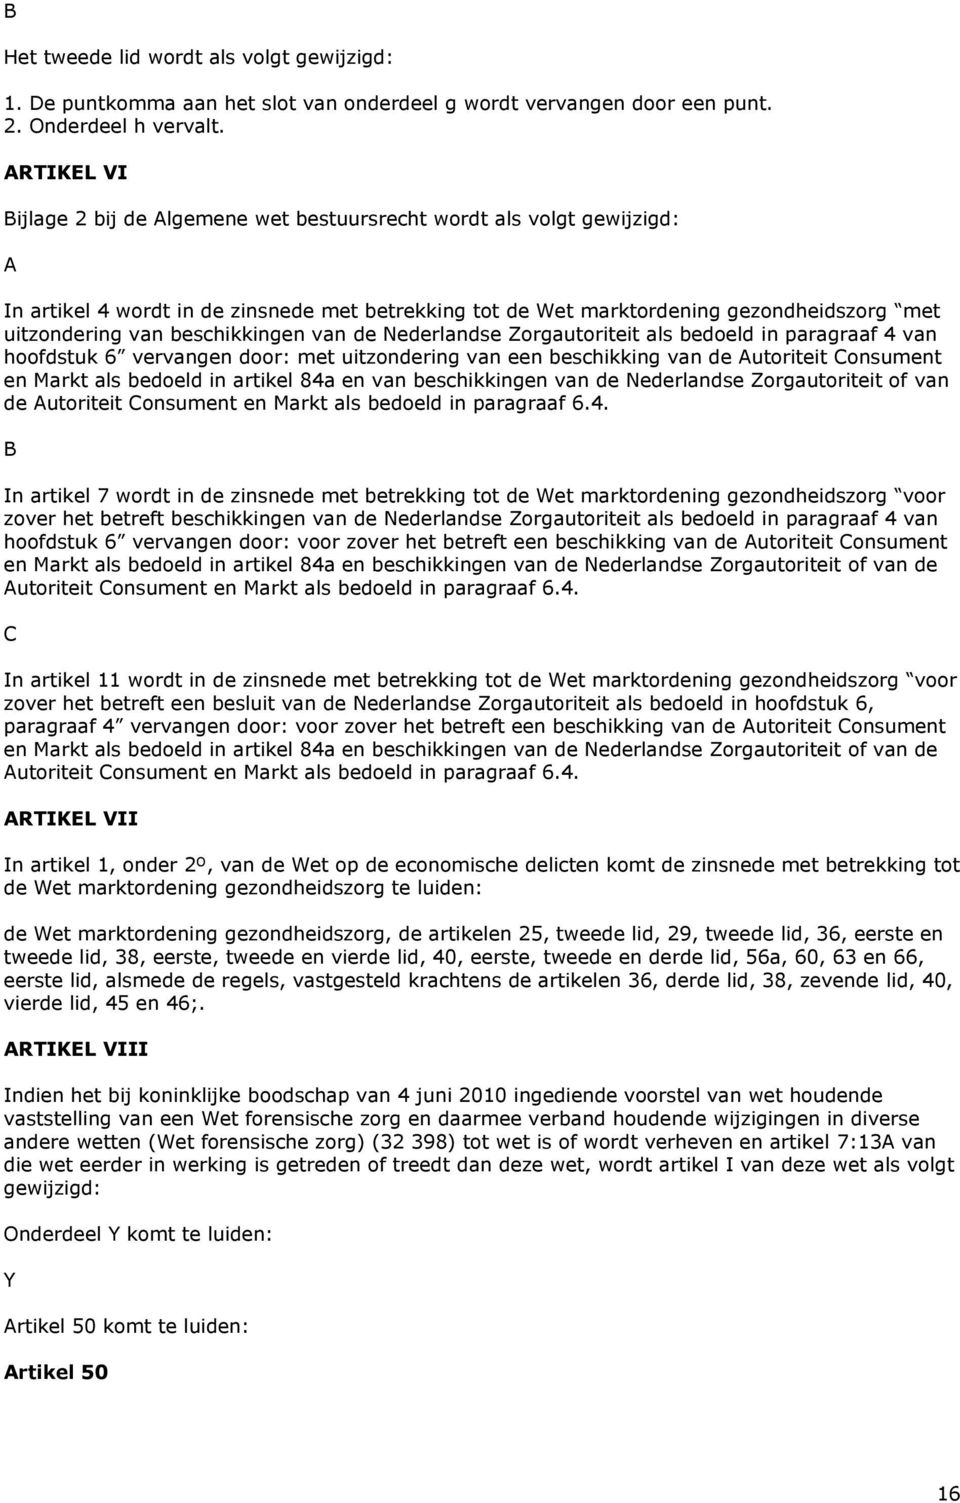 beschikkingen van de Nederlandse Zorgautoriteit als bedoeld in paragraaf 4 van hoofdstuk 6 vervangen door: met uitzondering van een beschikking van de Autoriteit Consument en Markt als bedoeld in